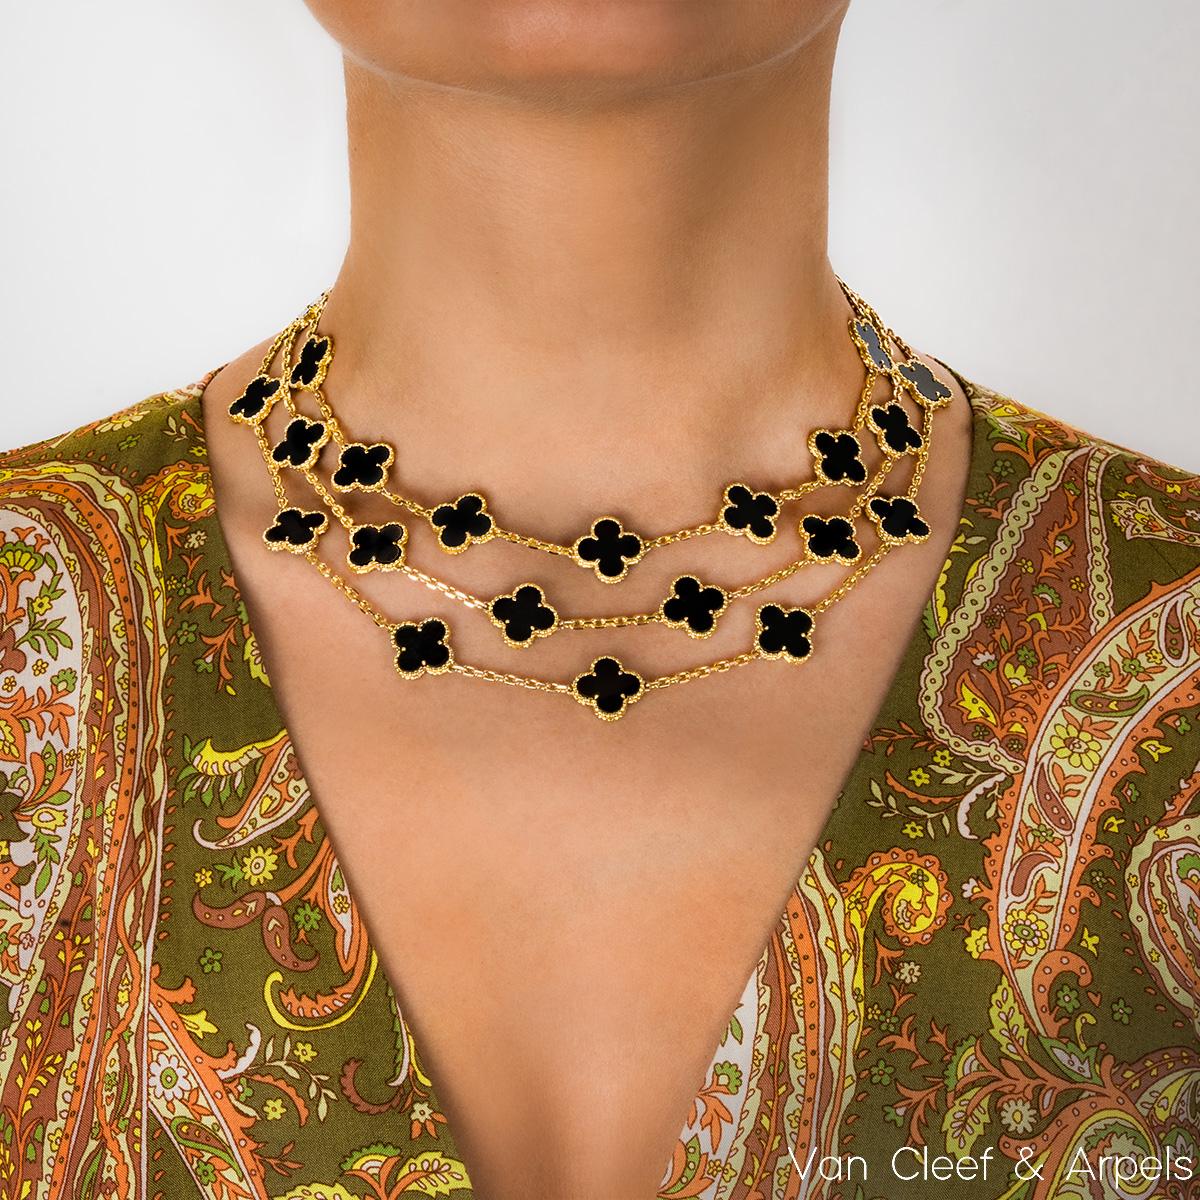 van cleef multiple motif necklace